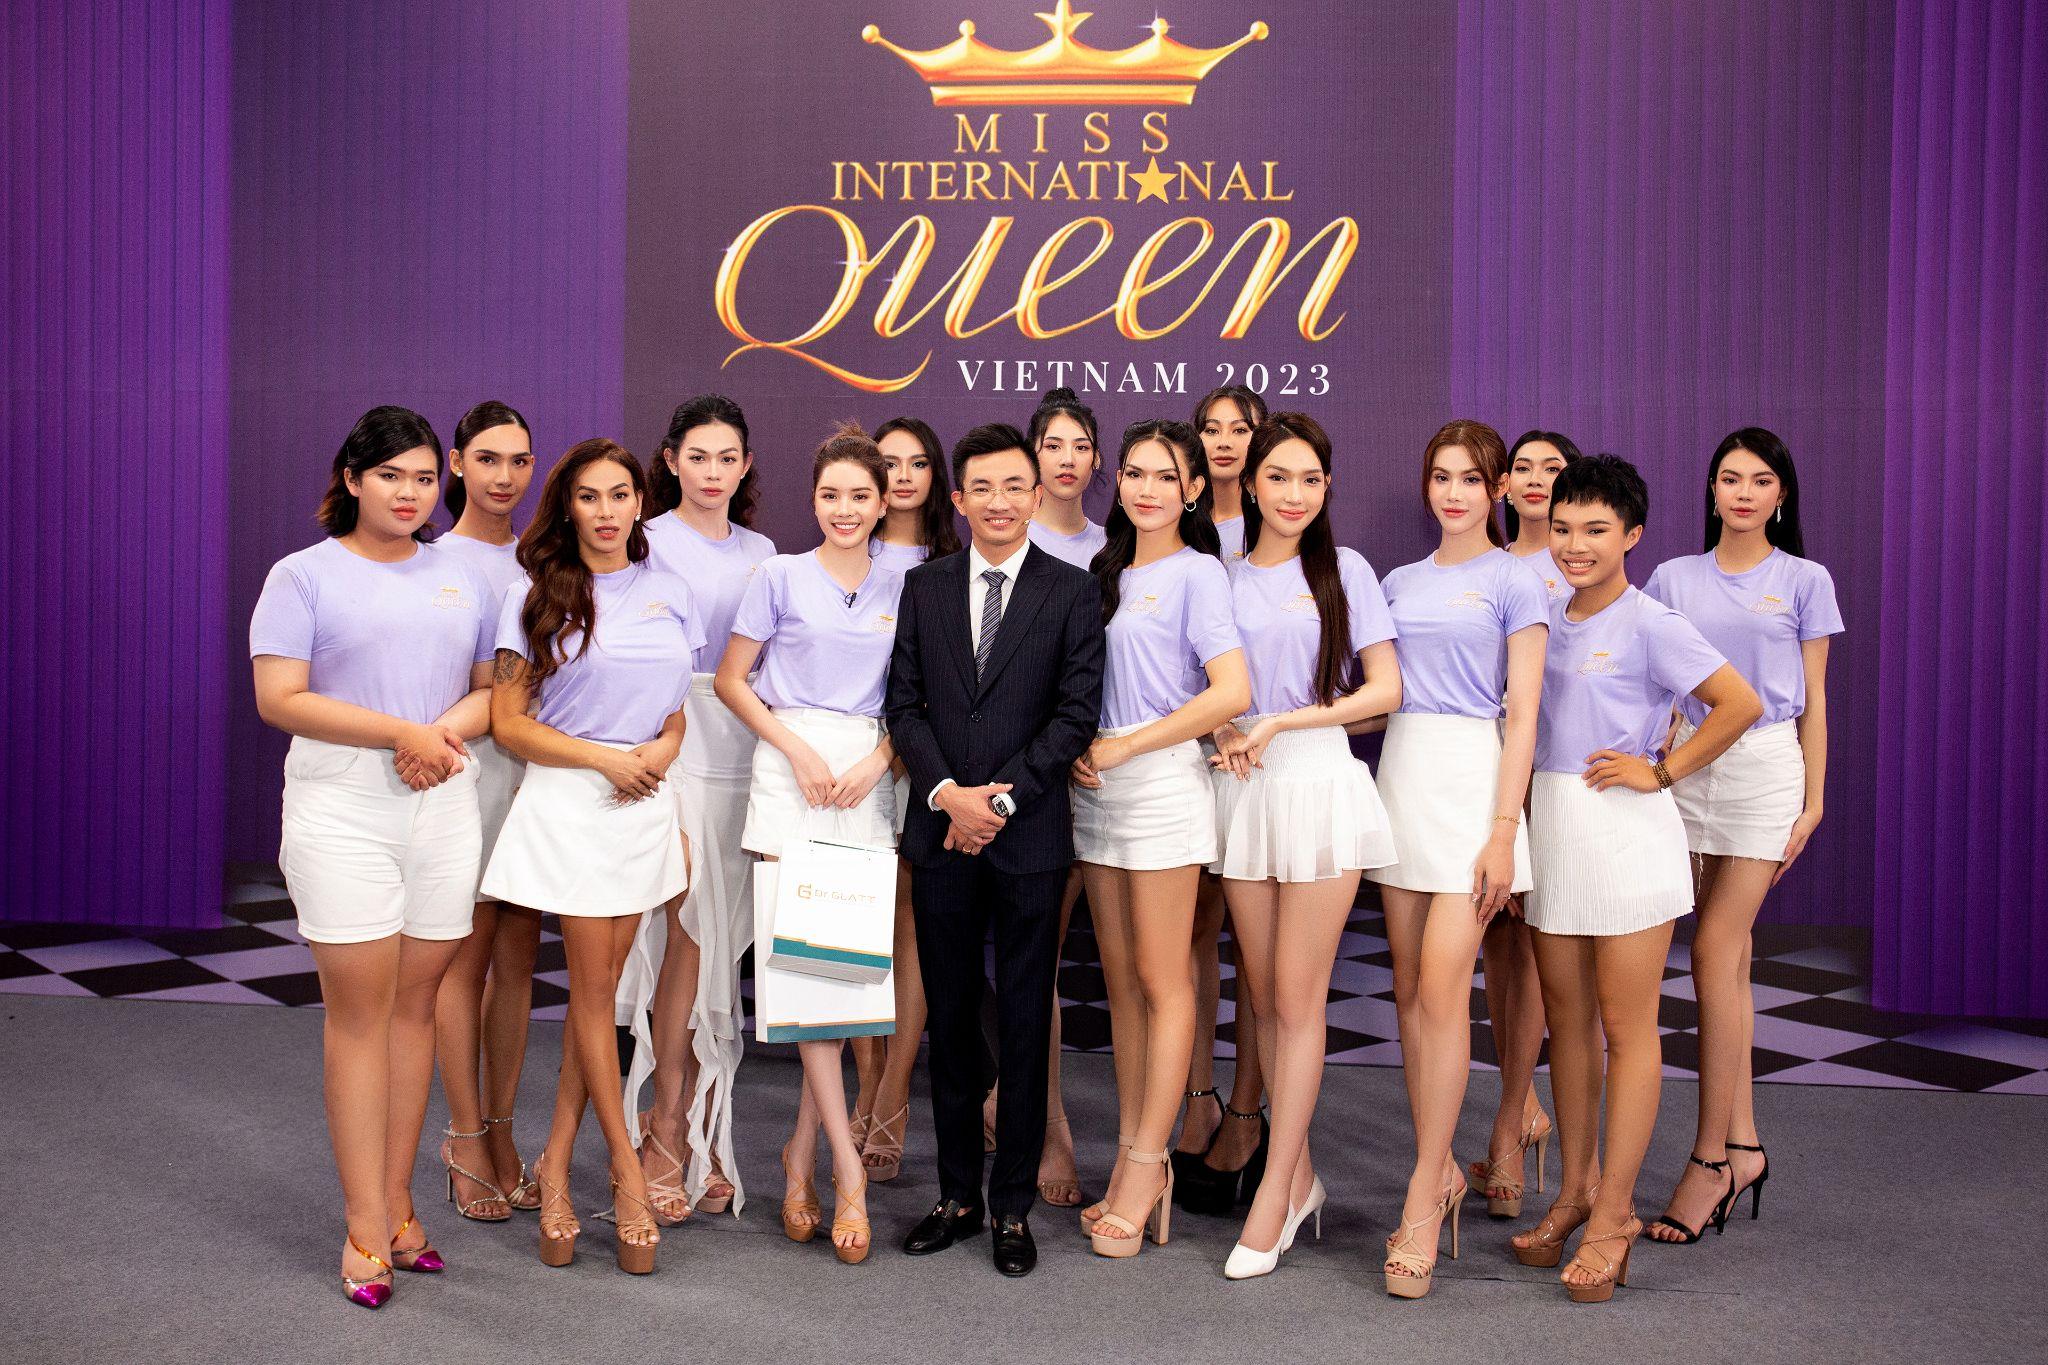 Ông Thái Hoàng Sơn - CEO Viện thẩm mỹ Siam Thailand kiêm Cố vấn sắc đẹp MIQVN 2023: Đam mê sẽ dẫn lối đến thành công - 2